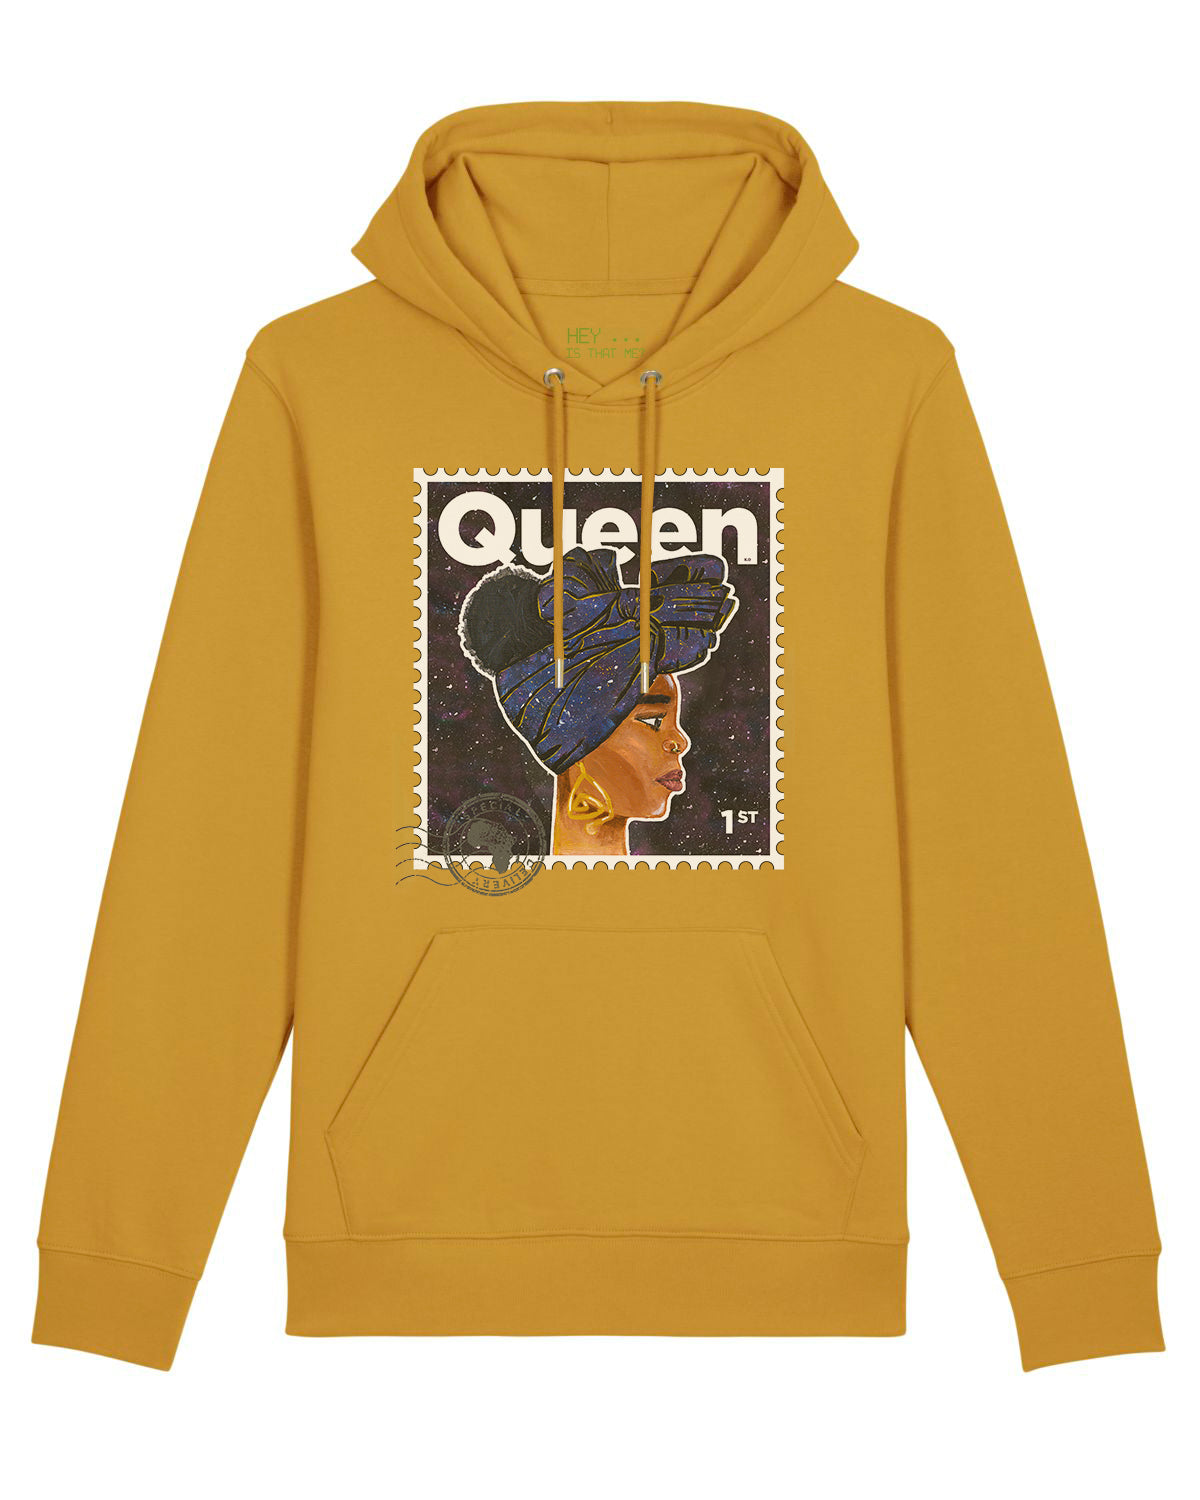 "Queen" Organic Cotton Hoodie - Mustard